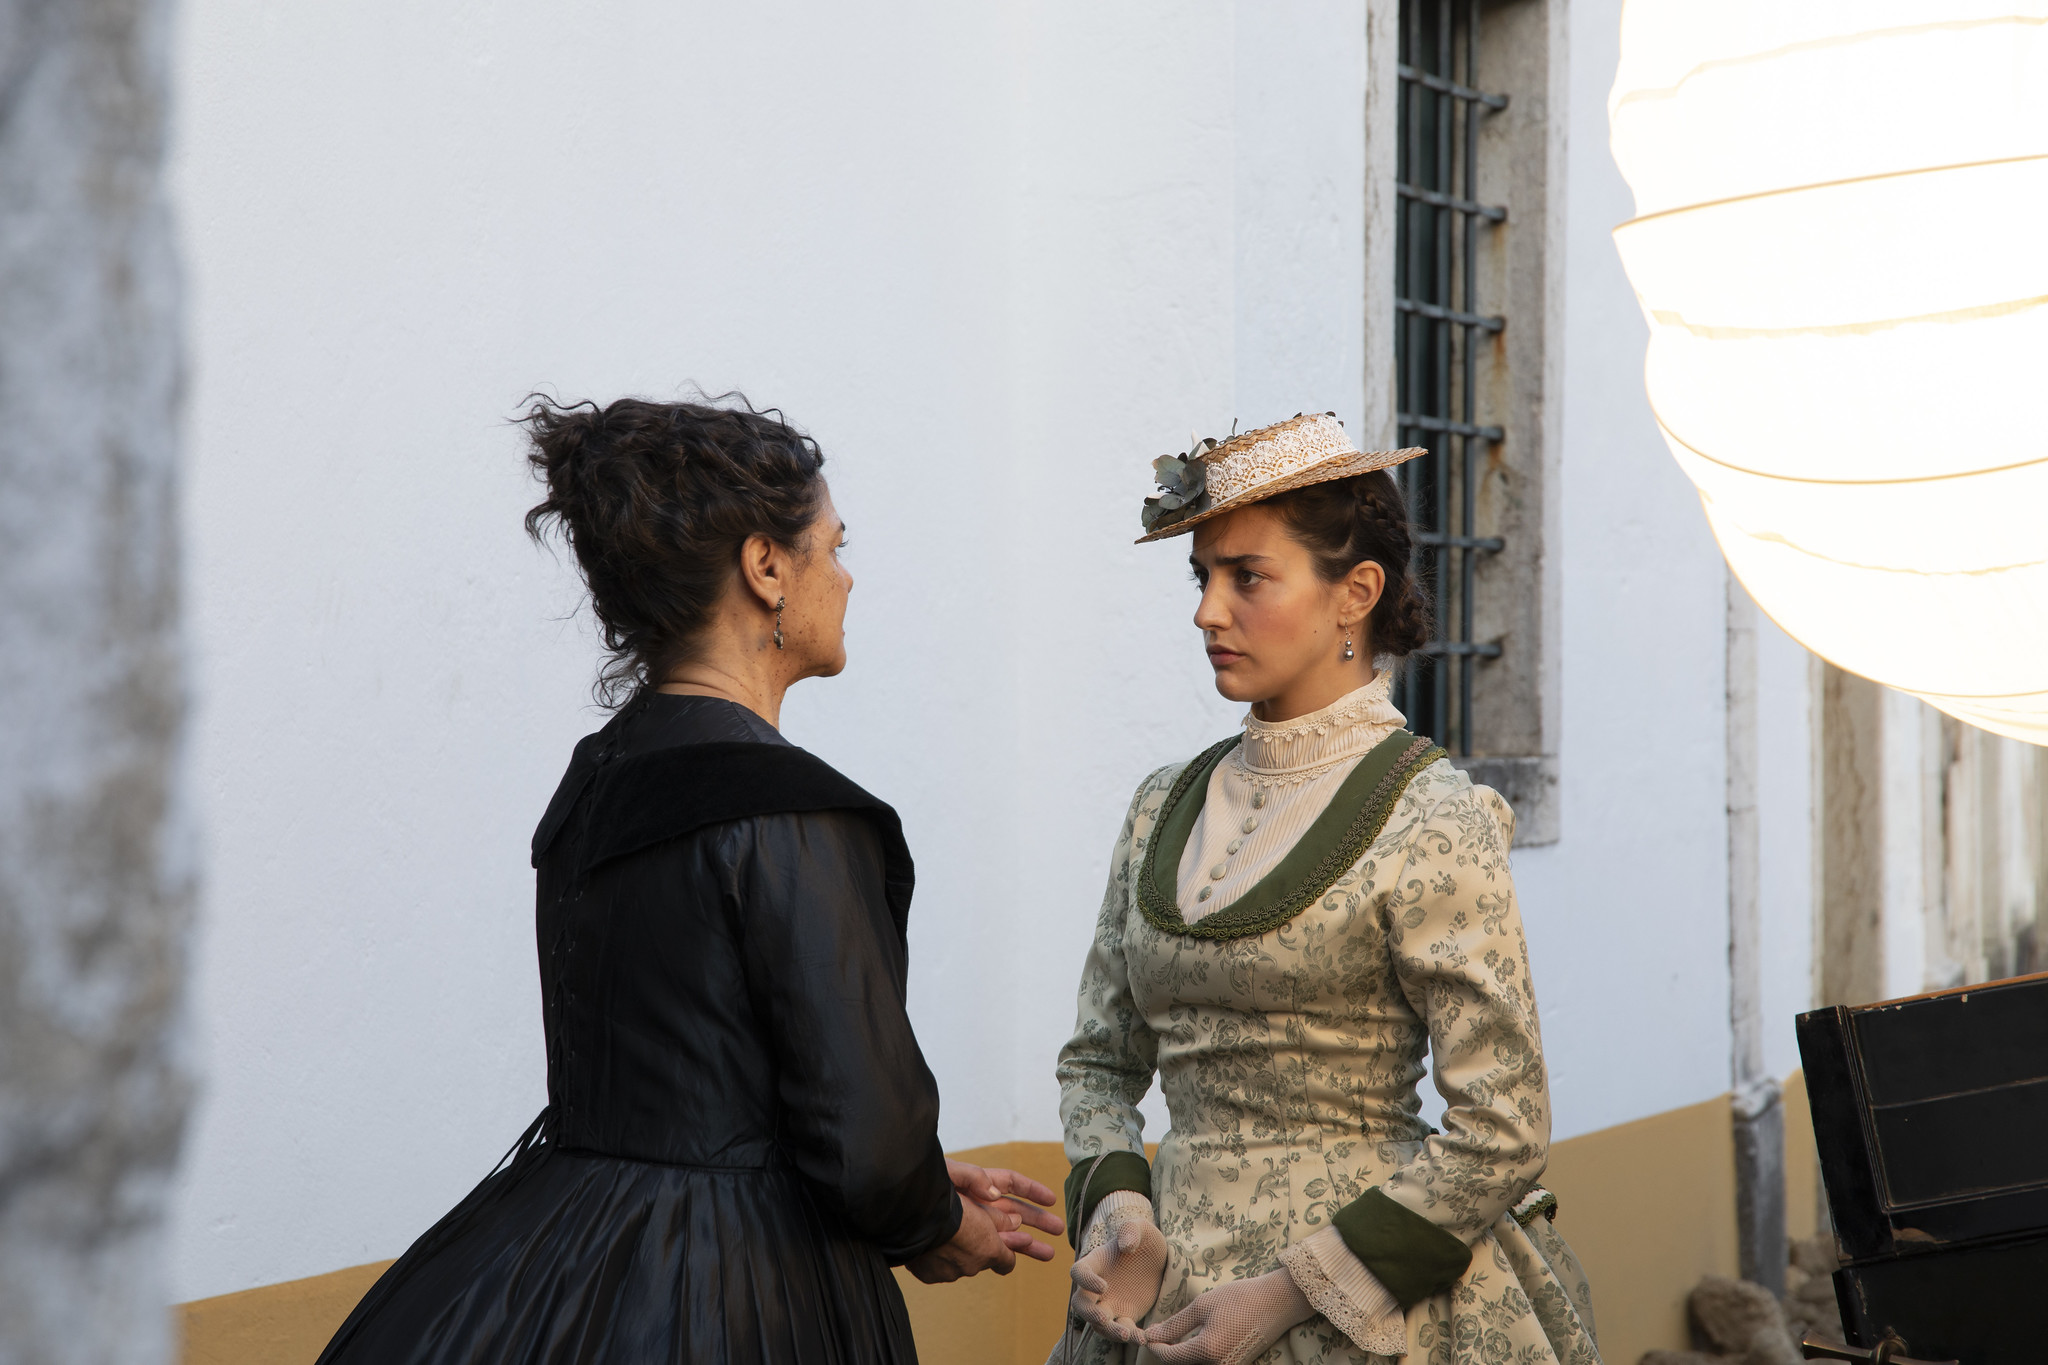 Filomena Gonçalves no papel de São Joaneira e Bárbara Branco no papel de Amélia | VOLF ENTERTAINMENT